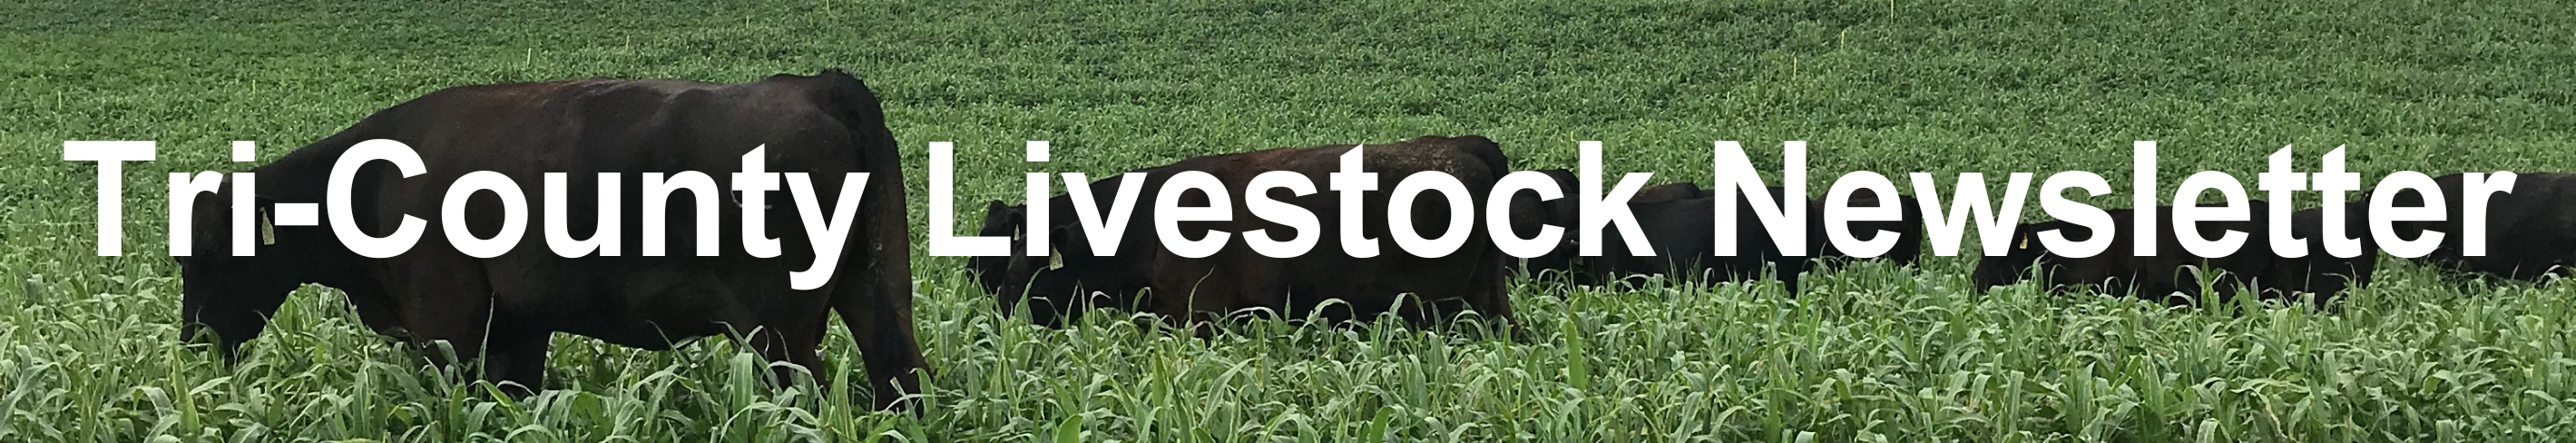 TriCounty Livestock Newsletter Banner